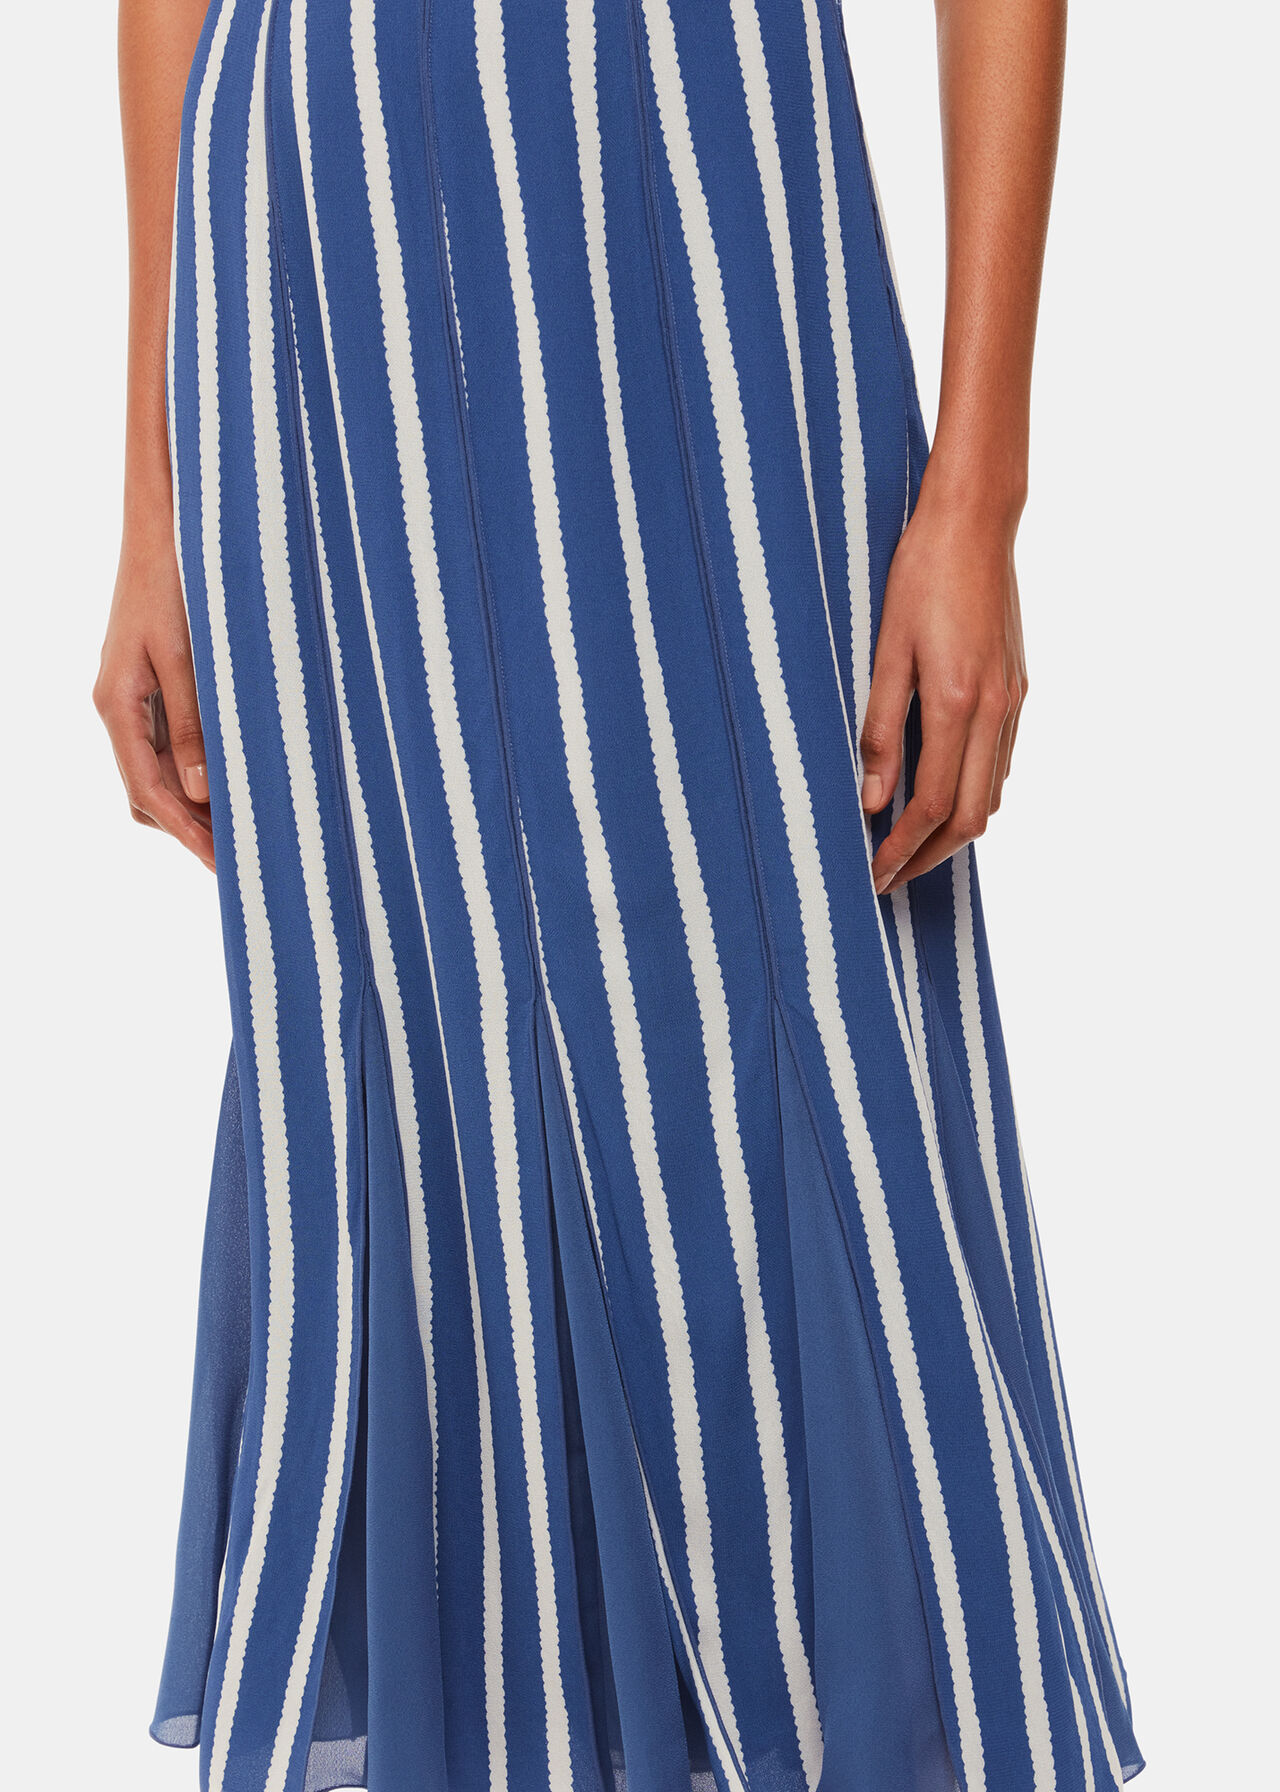 Crinkle Stripe Midi Dress